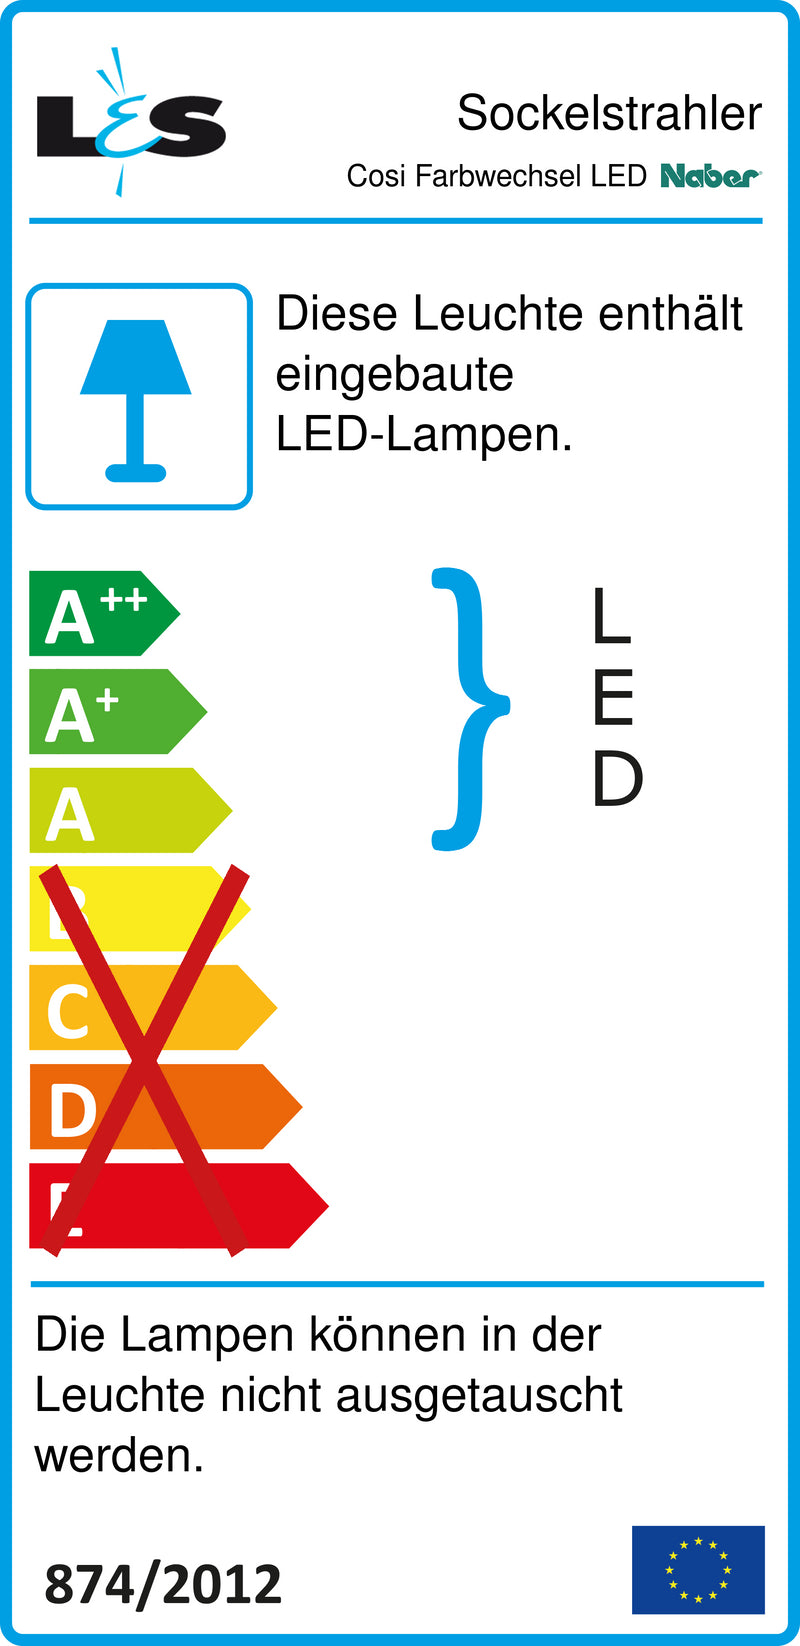 E-Label zu Zeichnung zu Cosi Farbwechsel LED als Variante Einzelleuchte ohne Schalter, LIC LED-System kompatibel von Naber GmbH in der Kategorie Lichttechnik in Österreich auf conceptshop.at